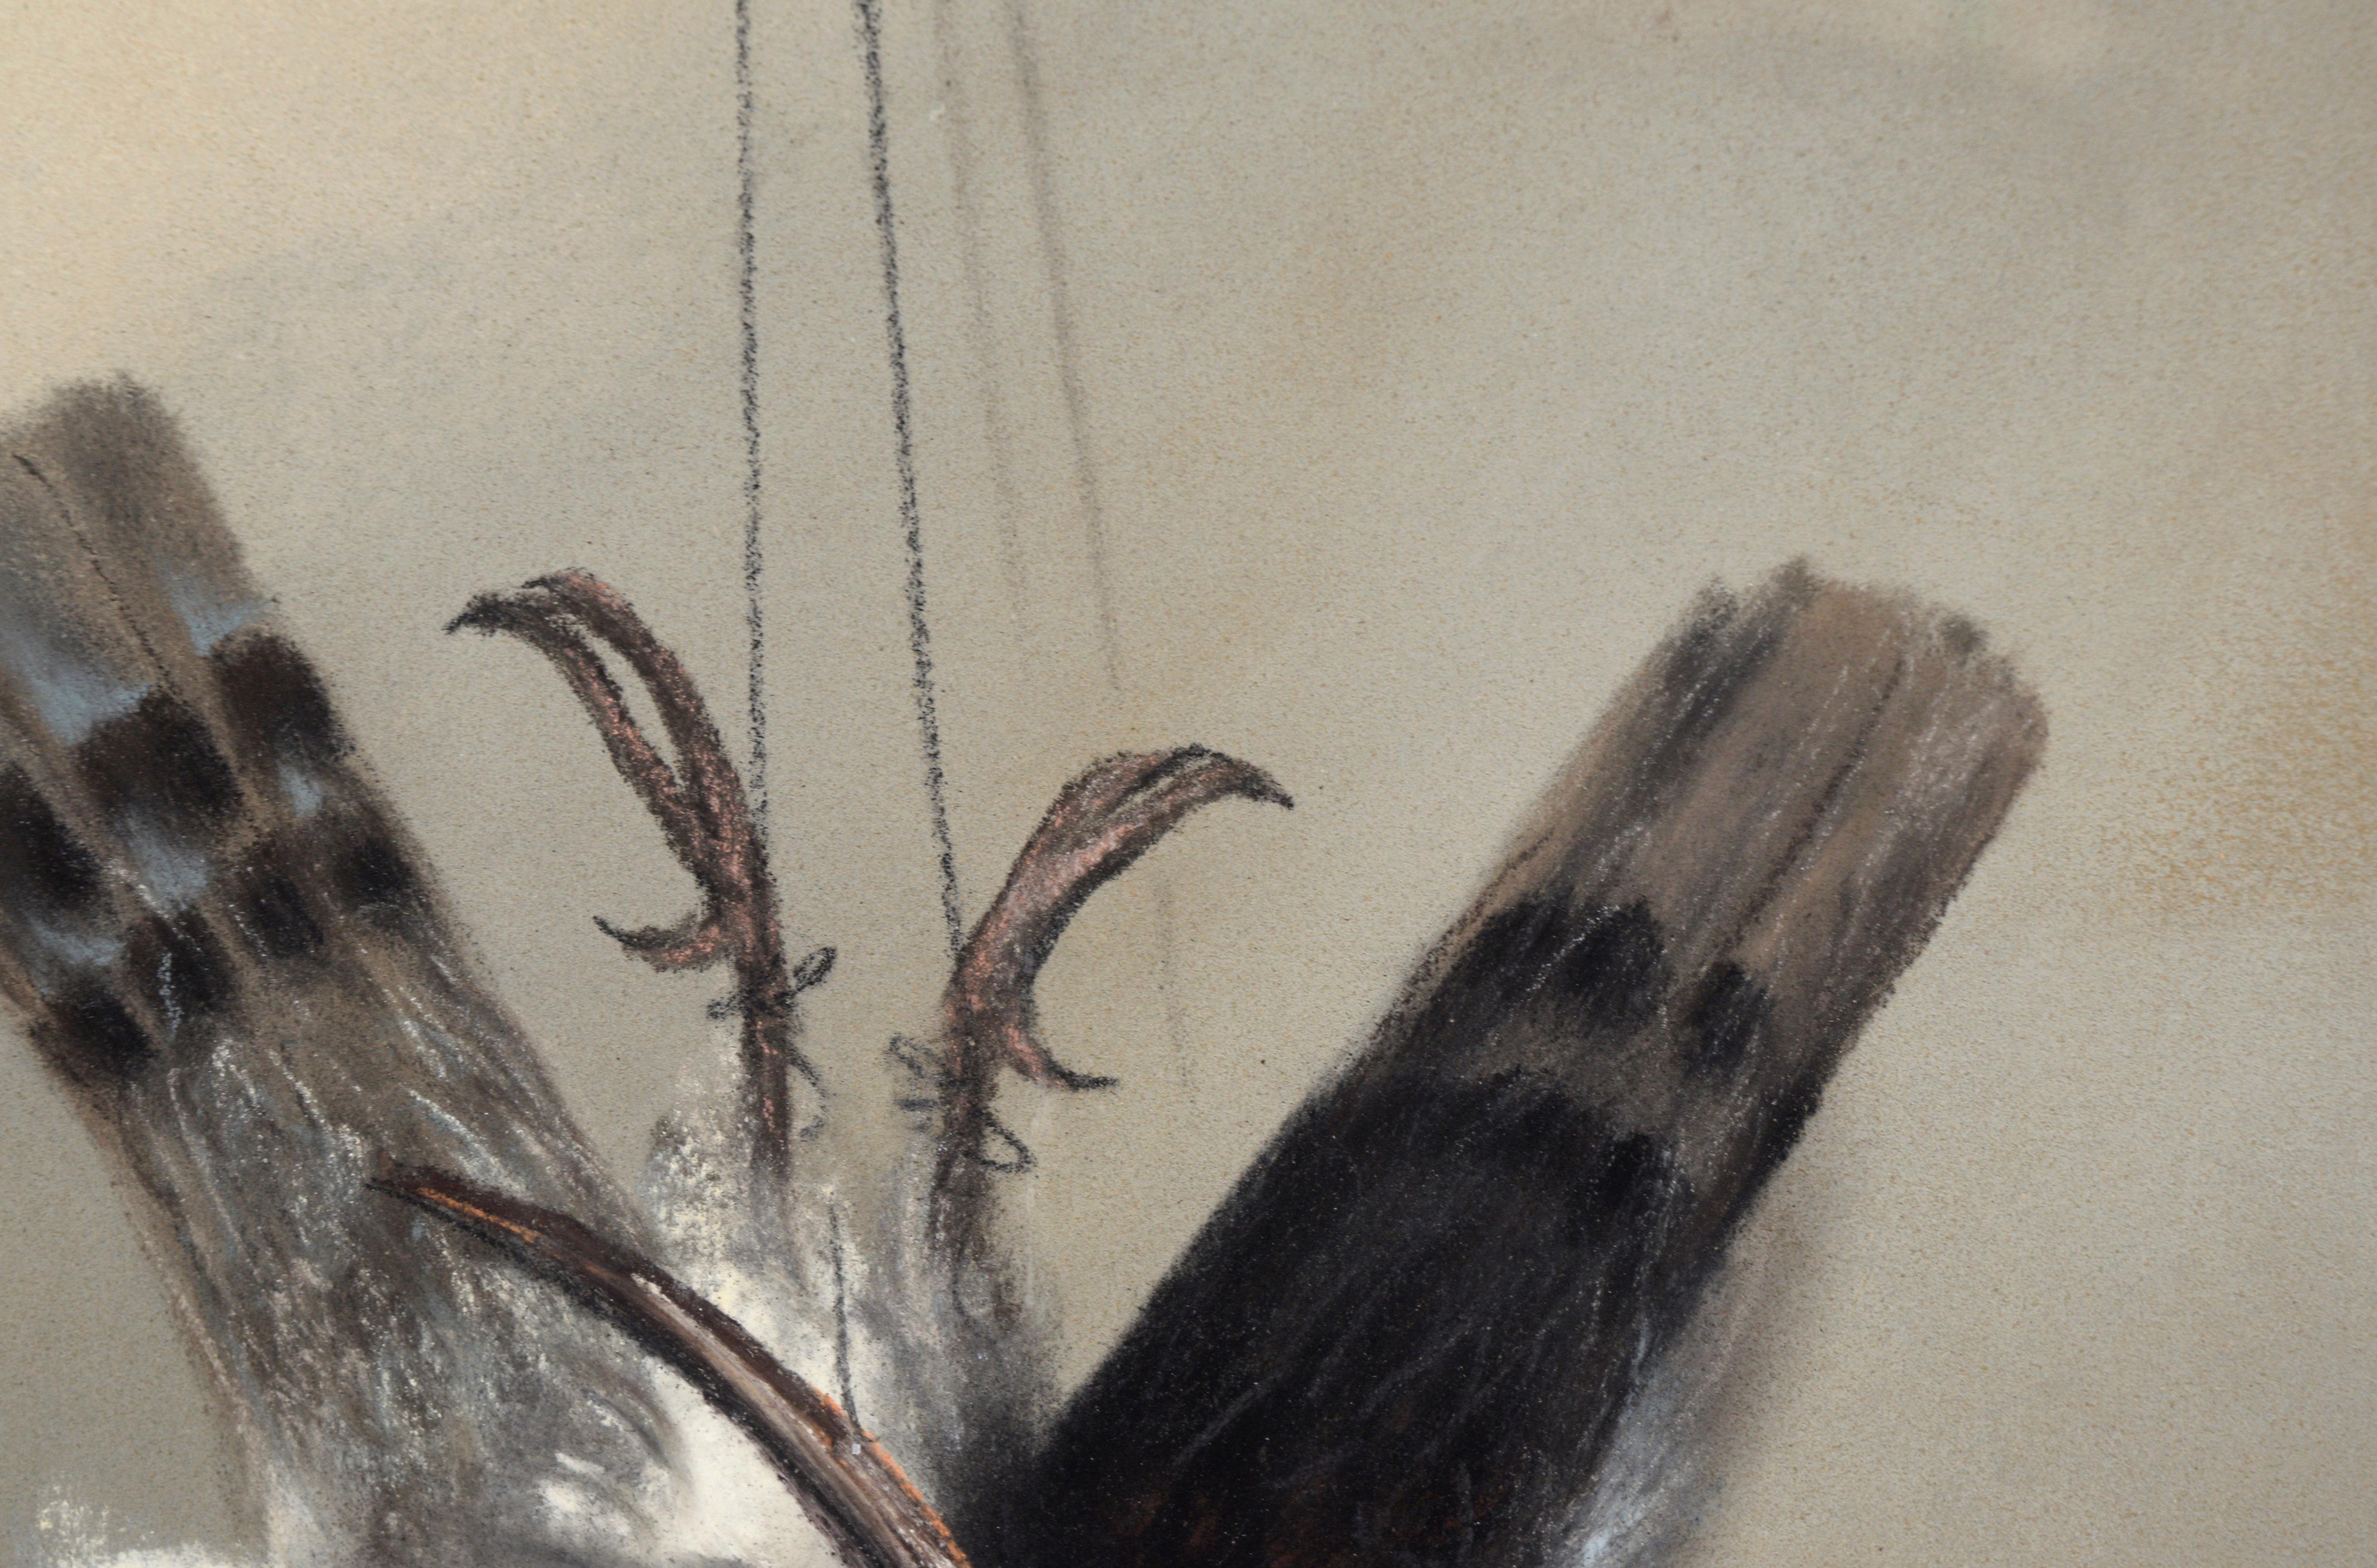 Deux oiseaux de jeu - Style trompe-l'œil au pastel sur papier

Deux oiseaux dans un style réaliste par LV Seely (19e siècle). Les oiseaux sont suspendus par les pattes, comme s'ils venaient d'être chassés. Les ombres projetées sur le mur et les